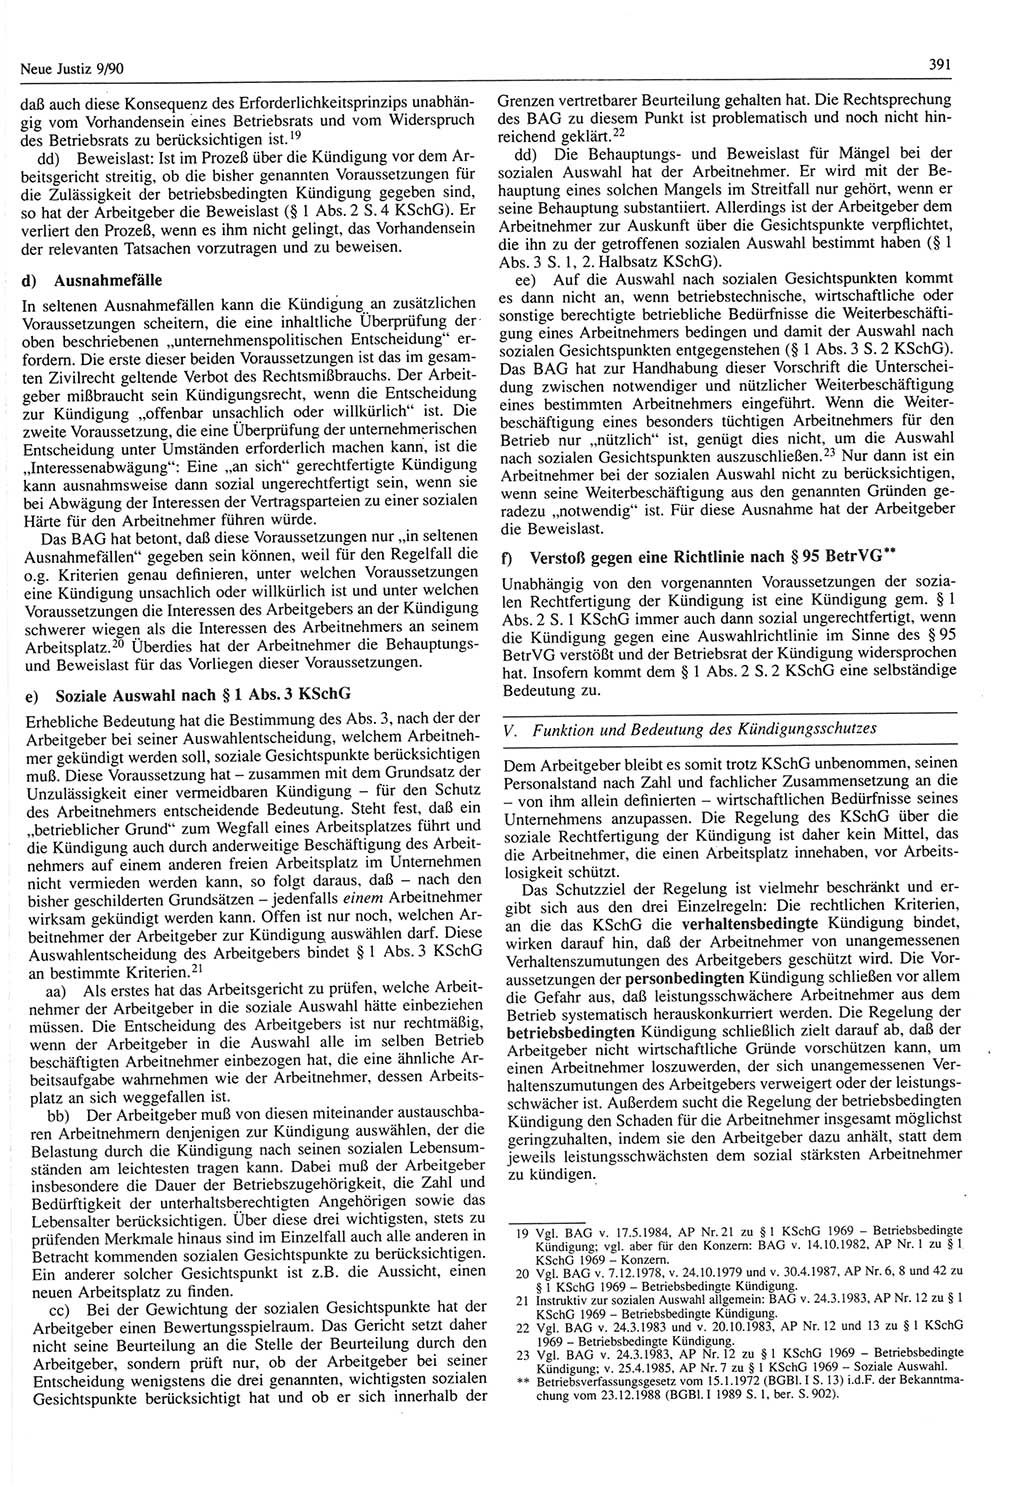 Neue Justiz (NJ), Zeitschrift für Rechtsetzung und Rechtsanwendung [Deutsche Demokratische Republik (DDR)], 44. Jahrgang 1990, Seite 391 (NJ DDR 1990, S. 391)